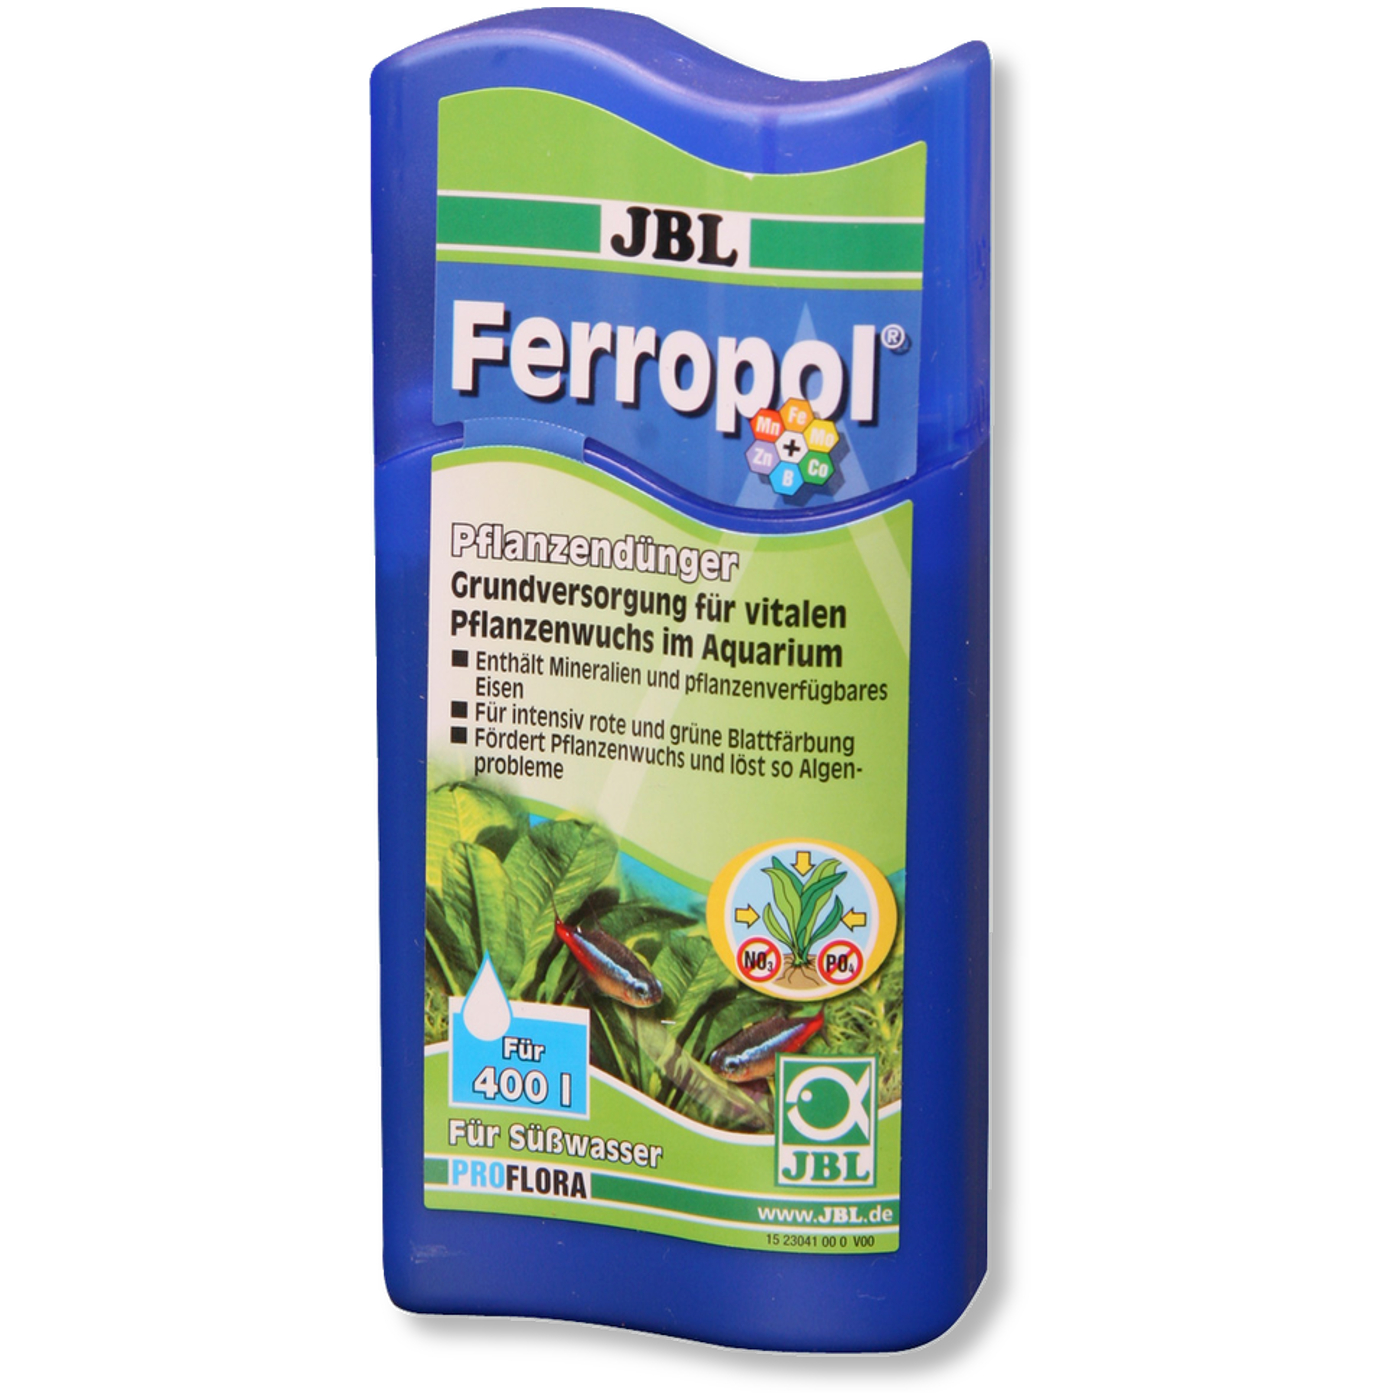 JBL Ferropol 100 ml (Pflanzendünger) 